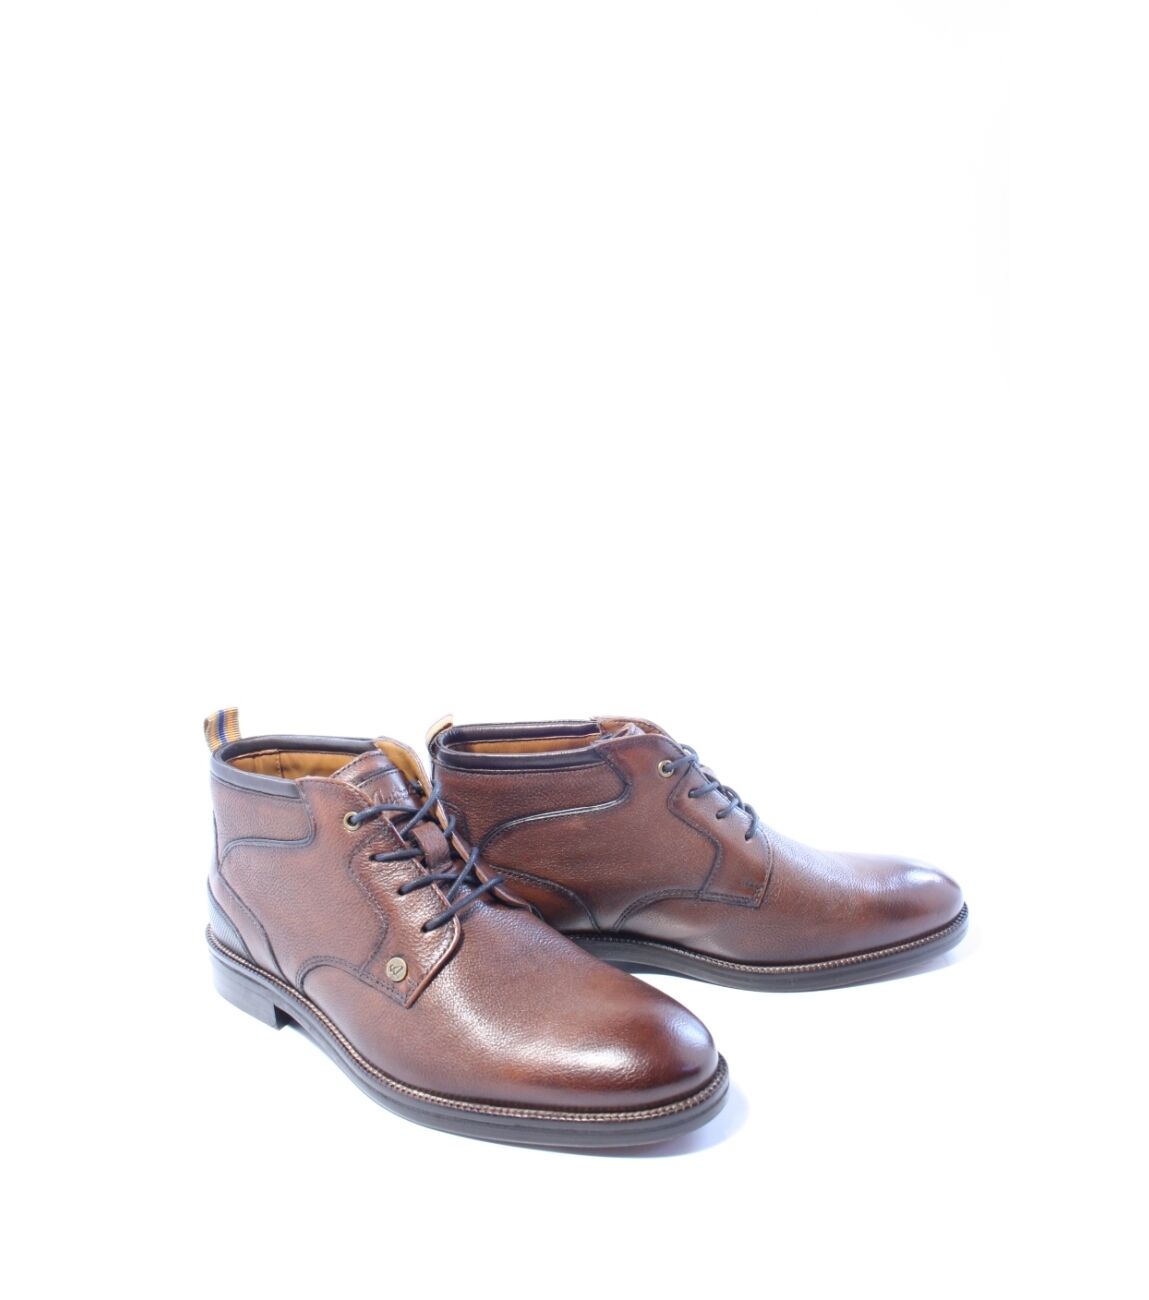 Australian Heren boots gekleed cognac 41